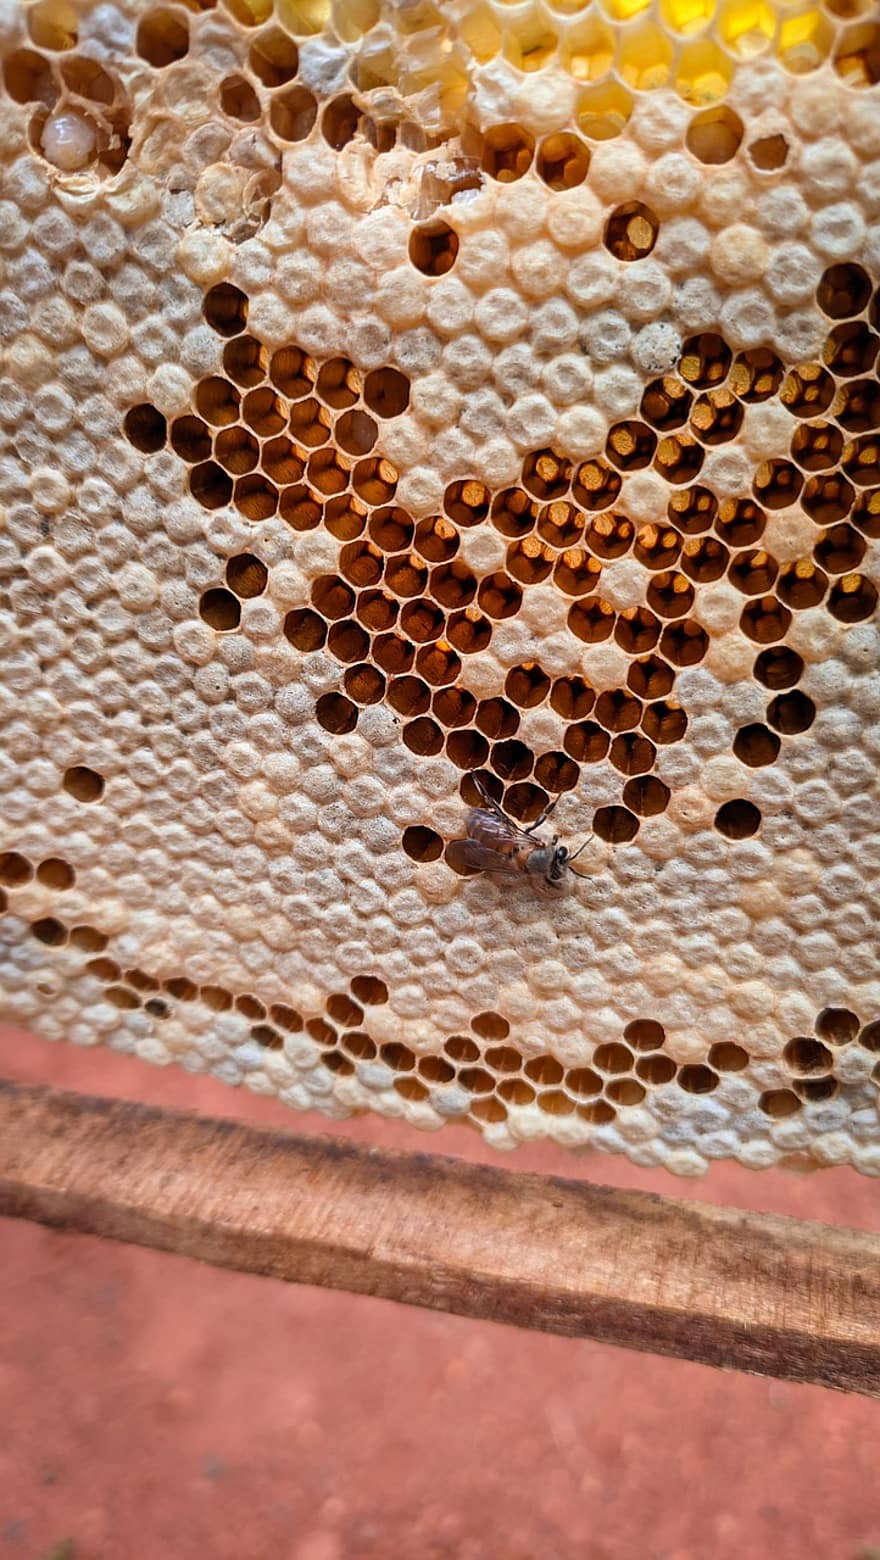 mel, abella, Marc de mel, marc, mel d'abella, granja, insecte, bresca, rusc, primer pla, cera d'abelles